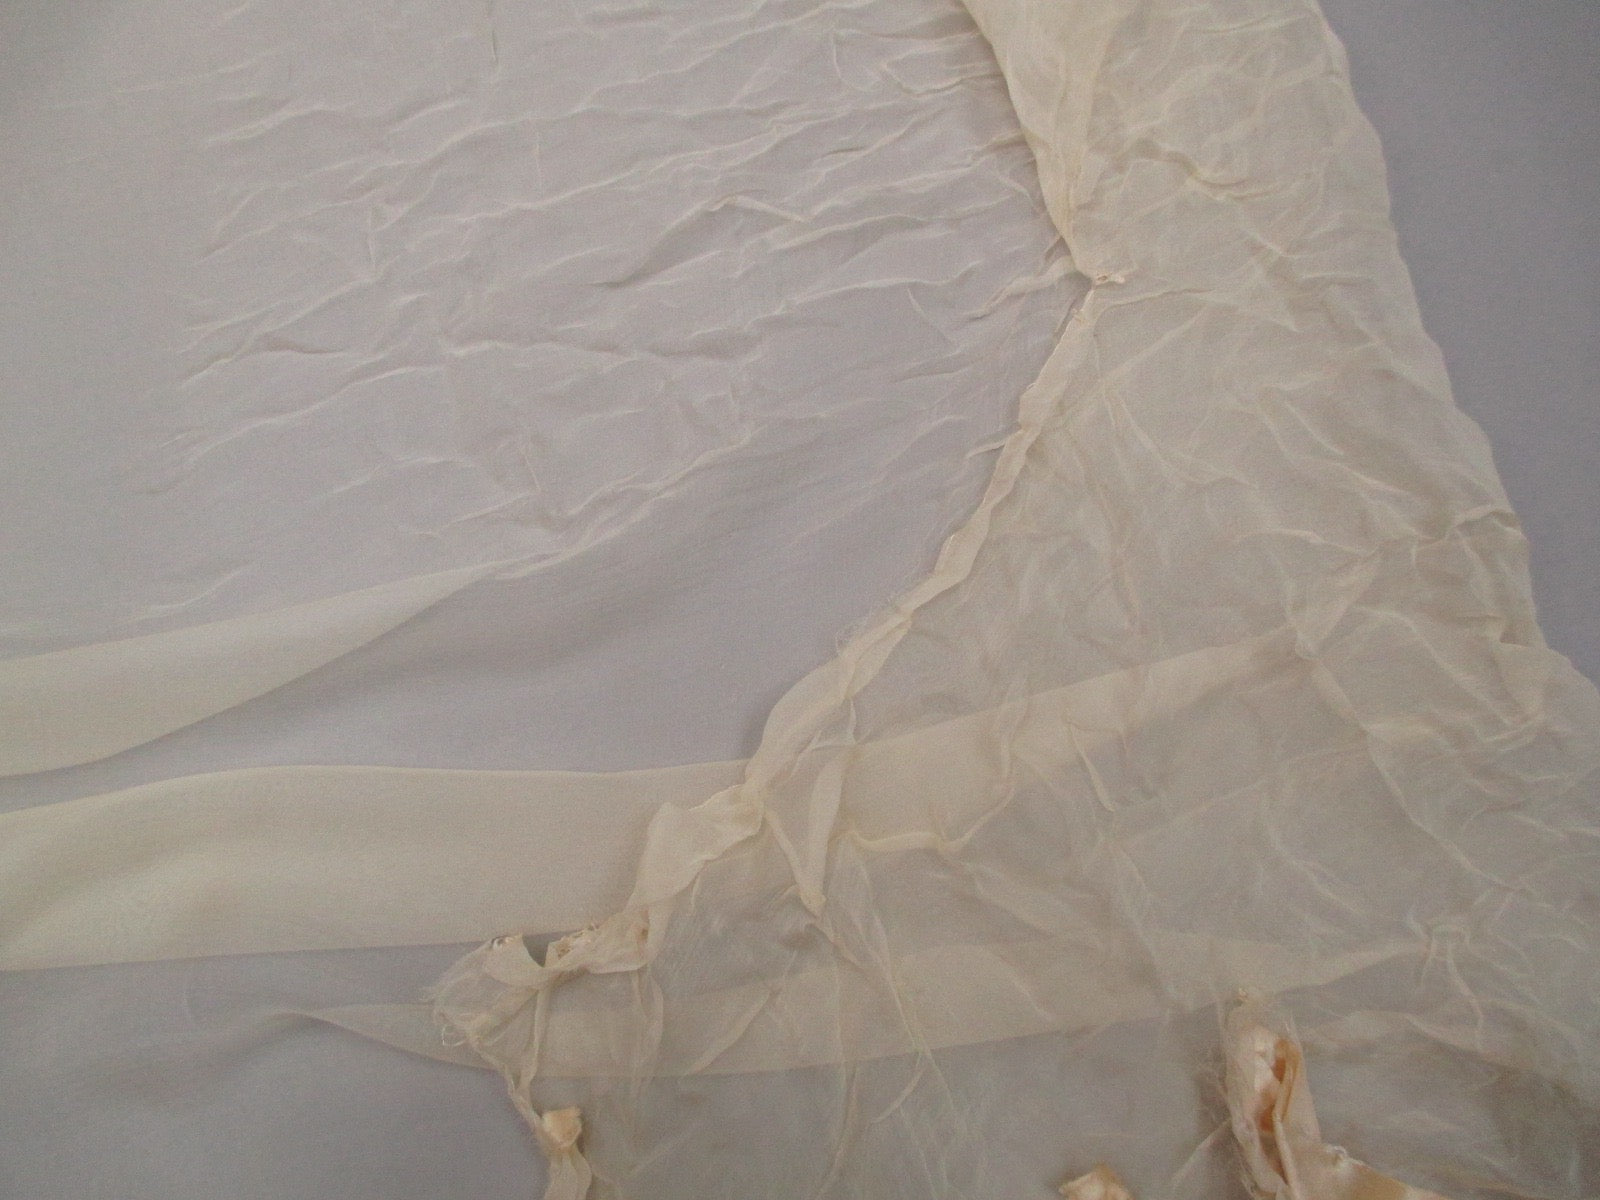 Antique Victorian Gossamer silk remnant